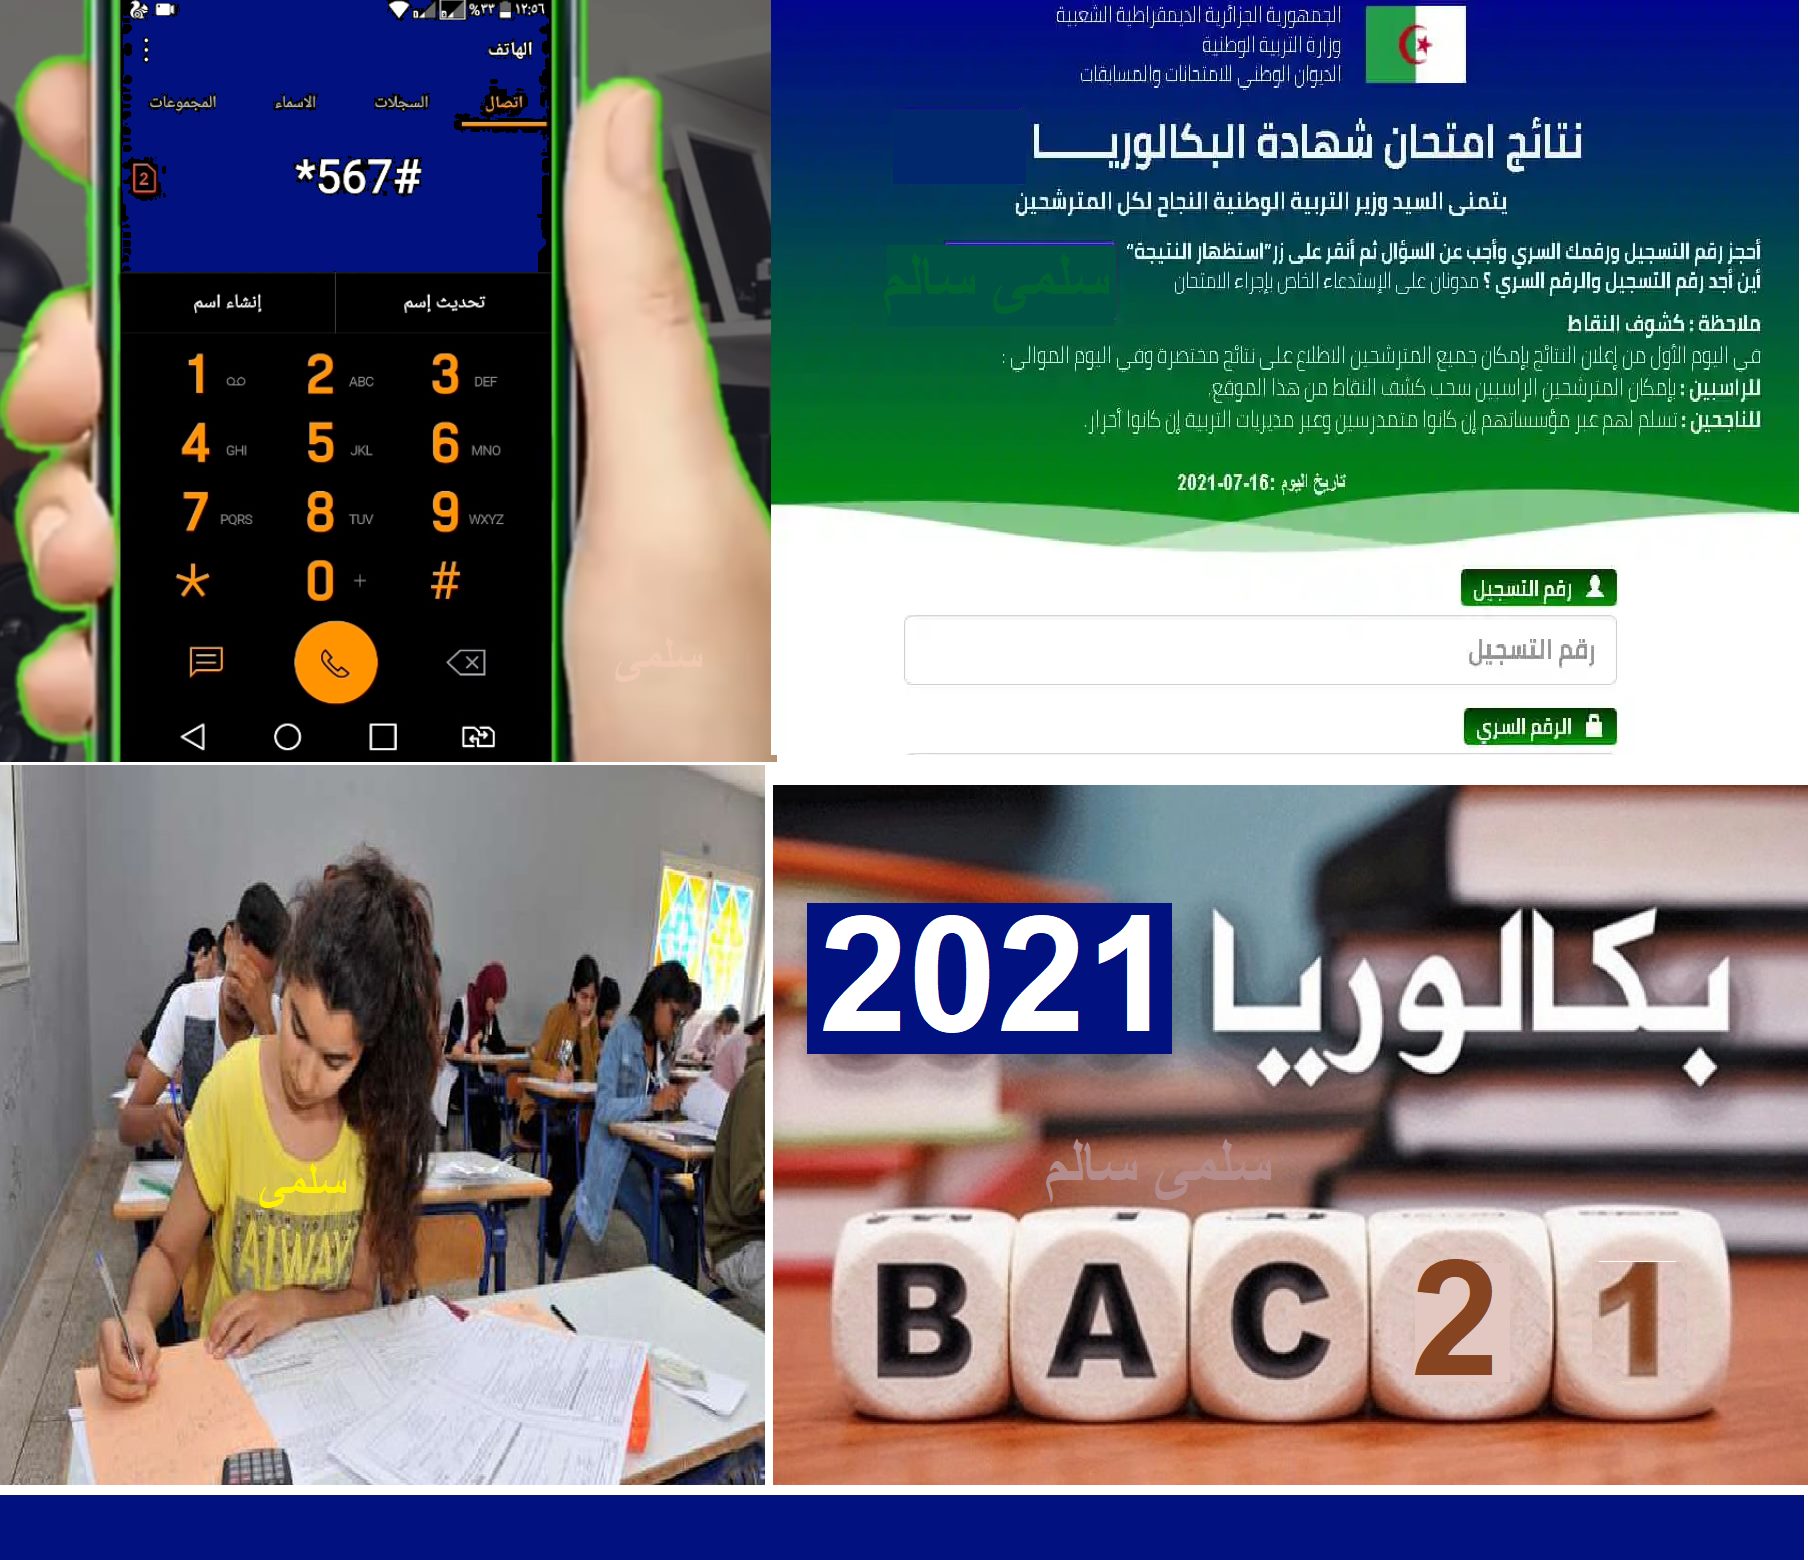 "بـ 3 طرق" كشف نتائج شهادة البكالوريا 2021 الجزائر bac.onec.dz resultat بالهاتف النقال